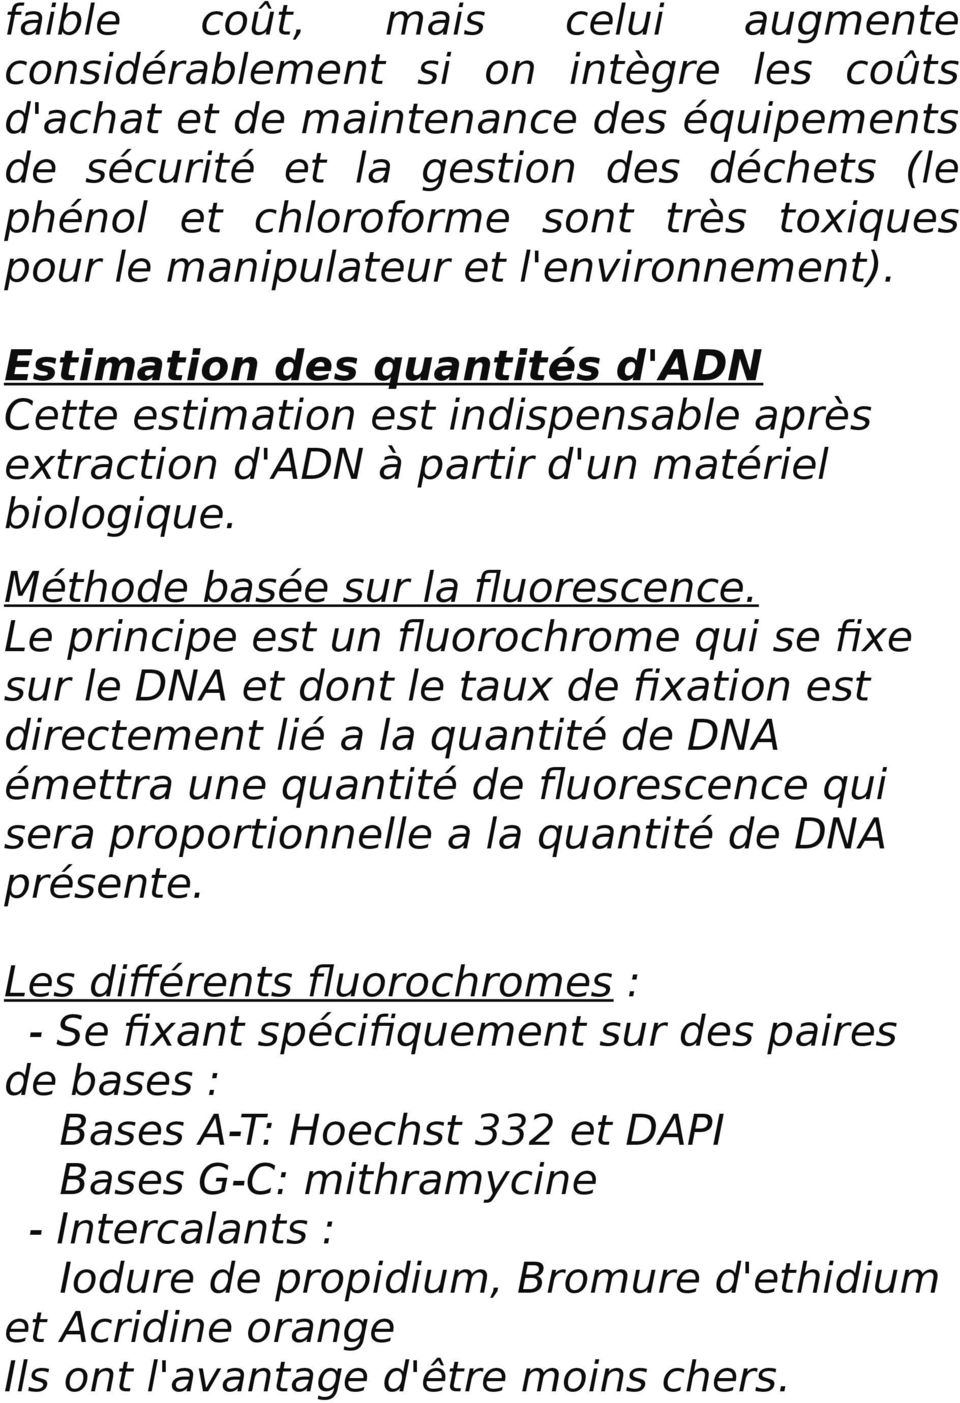 Le principe est un fluorochrome qui se fixe sur le DNA et dont le taux de fixation est directement lié a la quantité de DNA émettra une quantité de fluorescence qui sera proportionnelle a la quantité